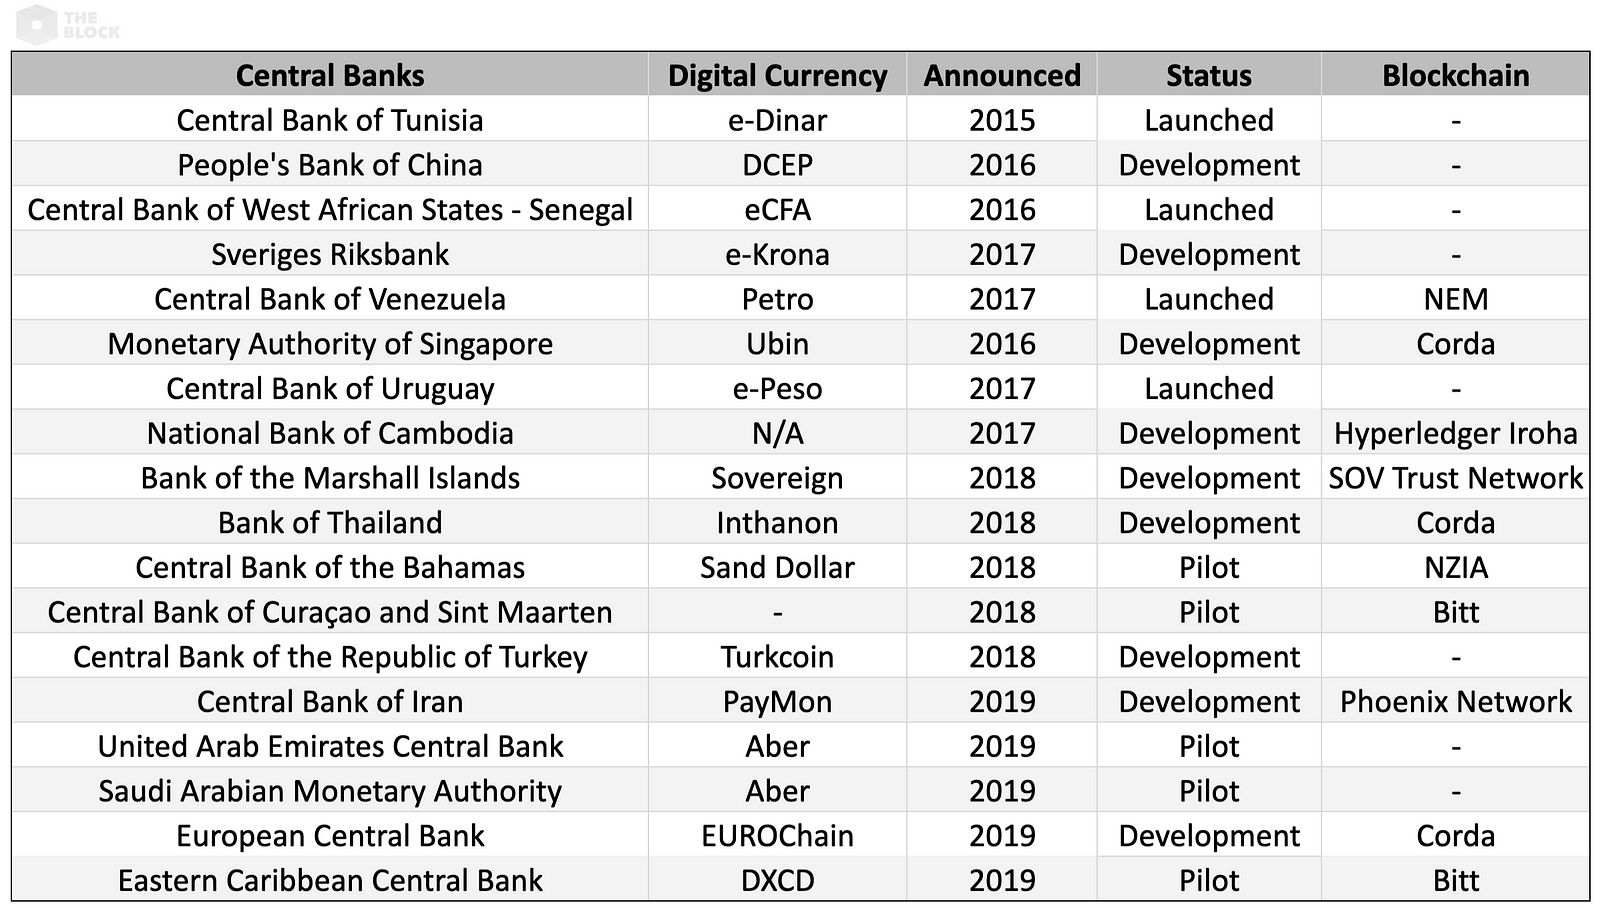 ประเทศไทยเป็น 1 ใน 18 ธนาคารที่กำลังพัฒนาสกุลเงินดิจิทัลแห่งชาติ